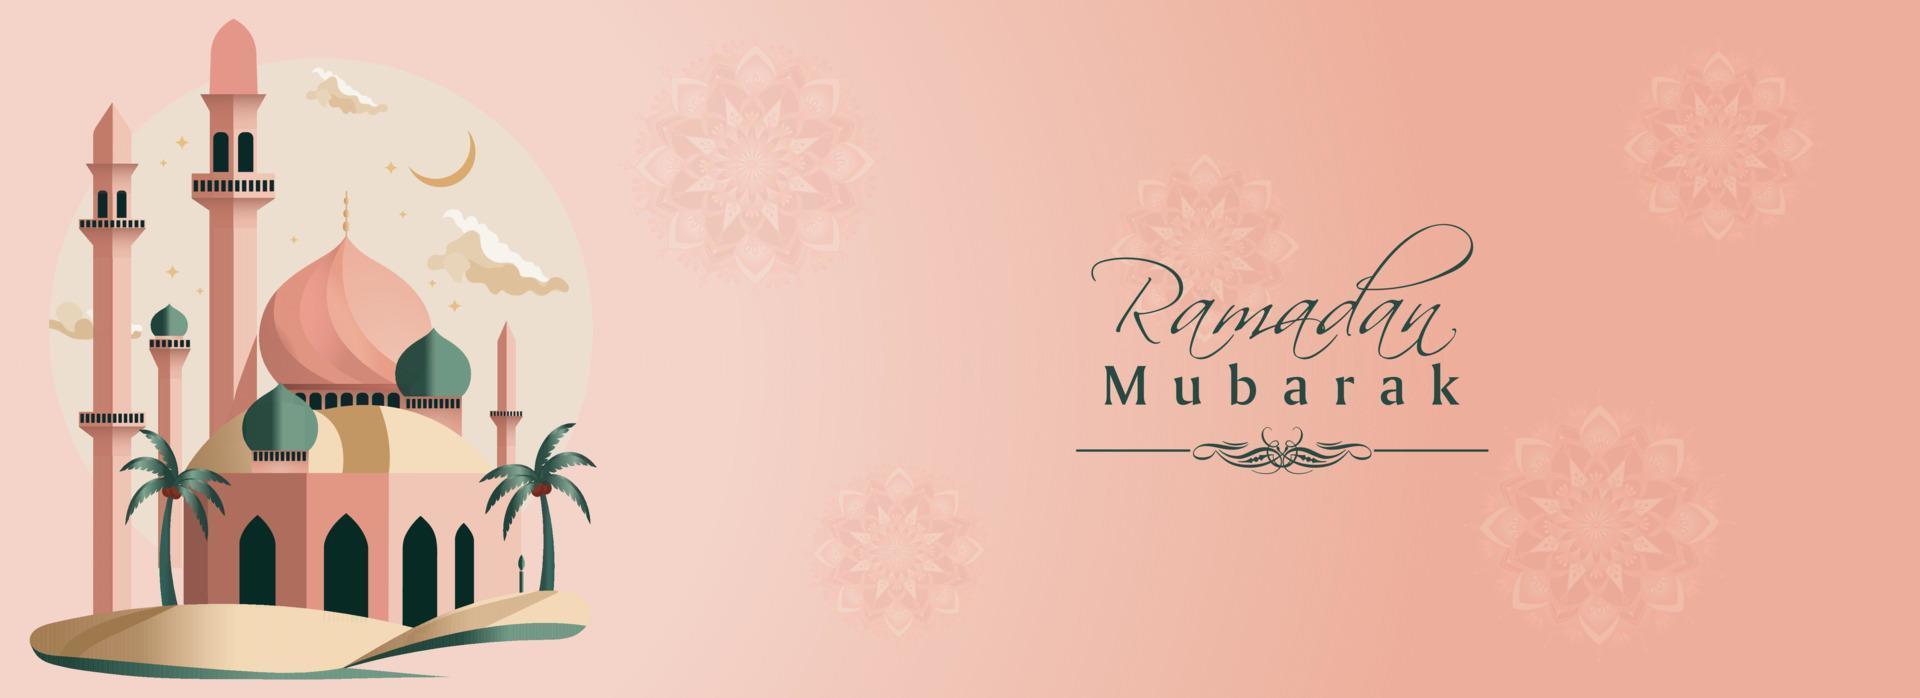 Ramadan mubarak banier ontwerp met mooi moskee, kokosnoot bomen Aan roze mandala patroon achtergrond. vector